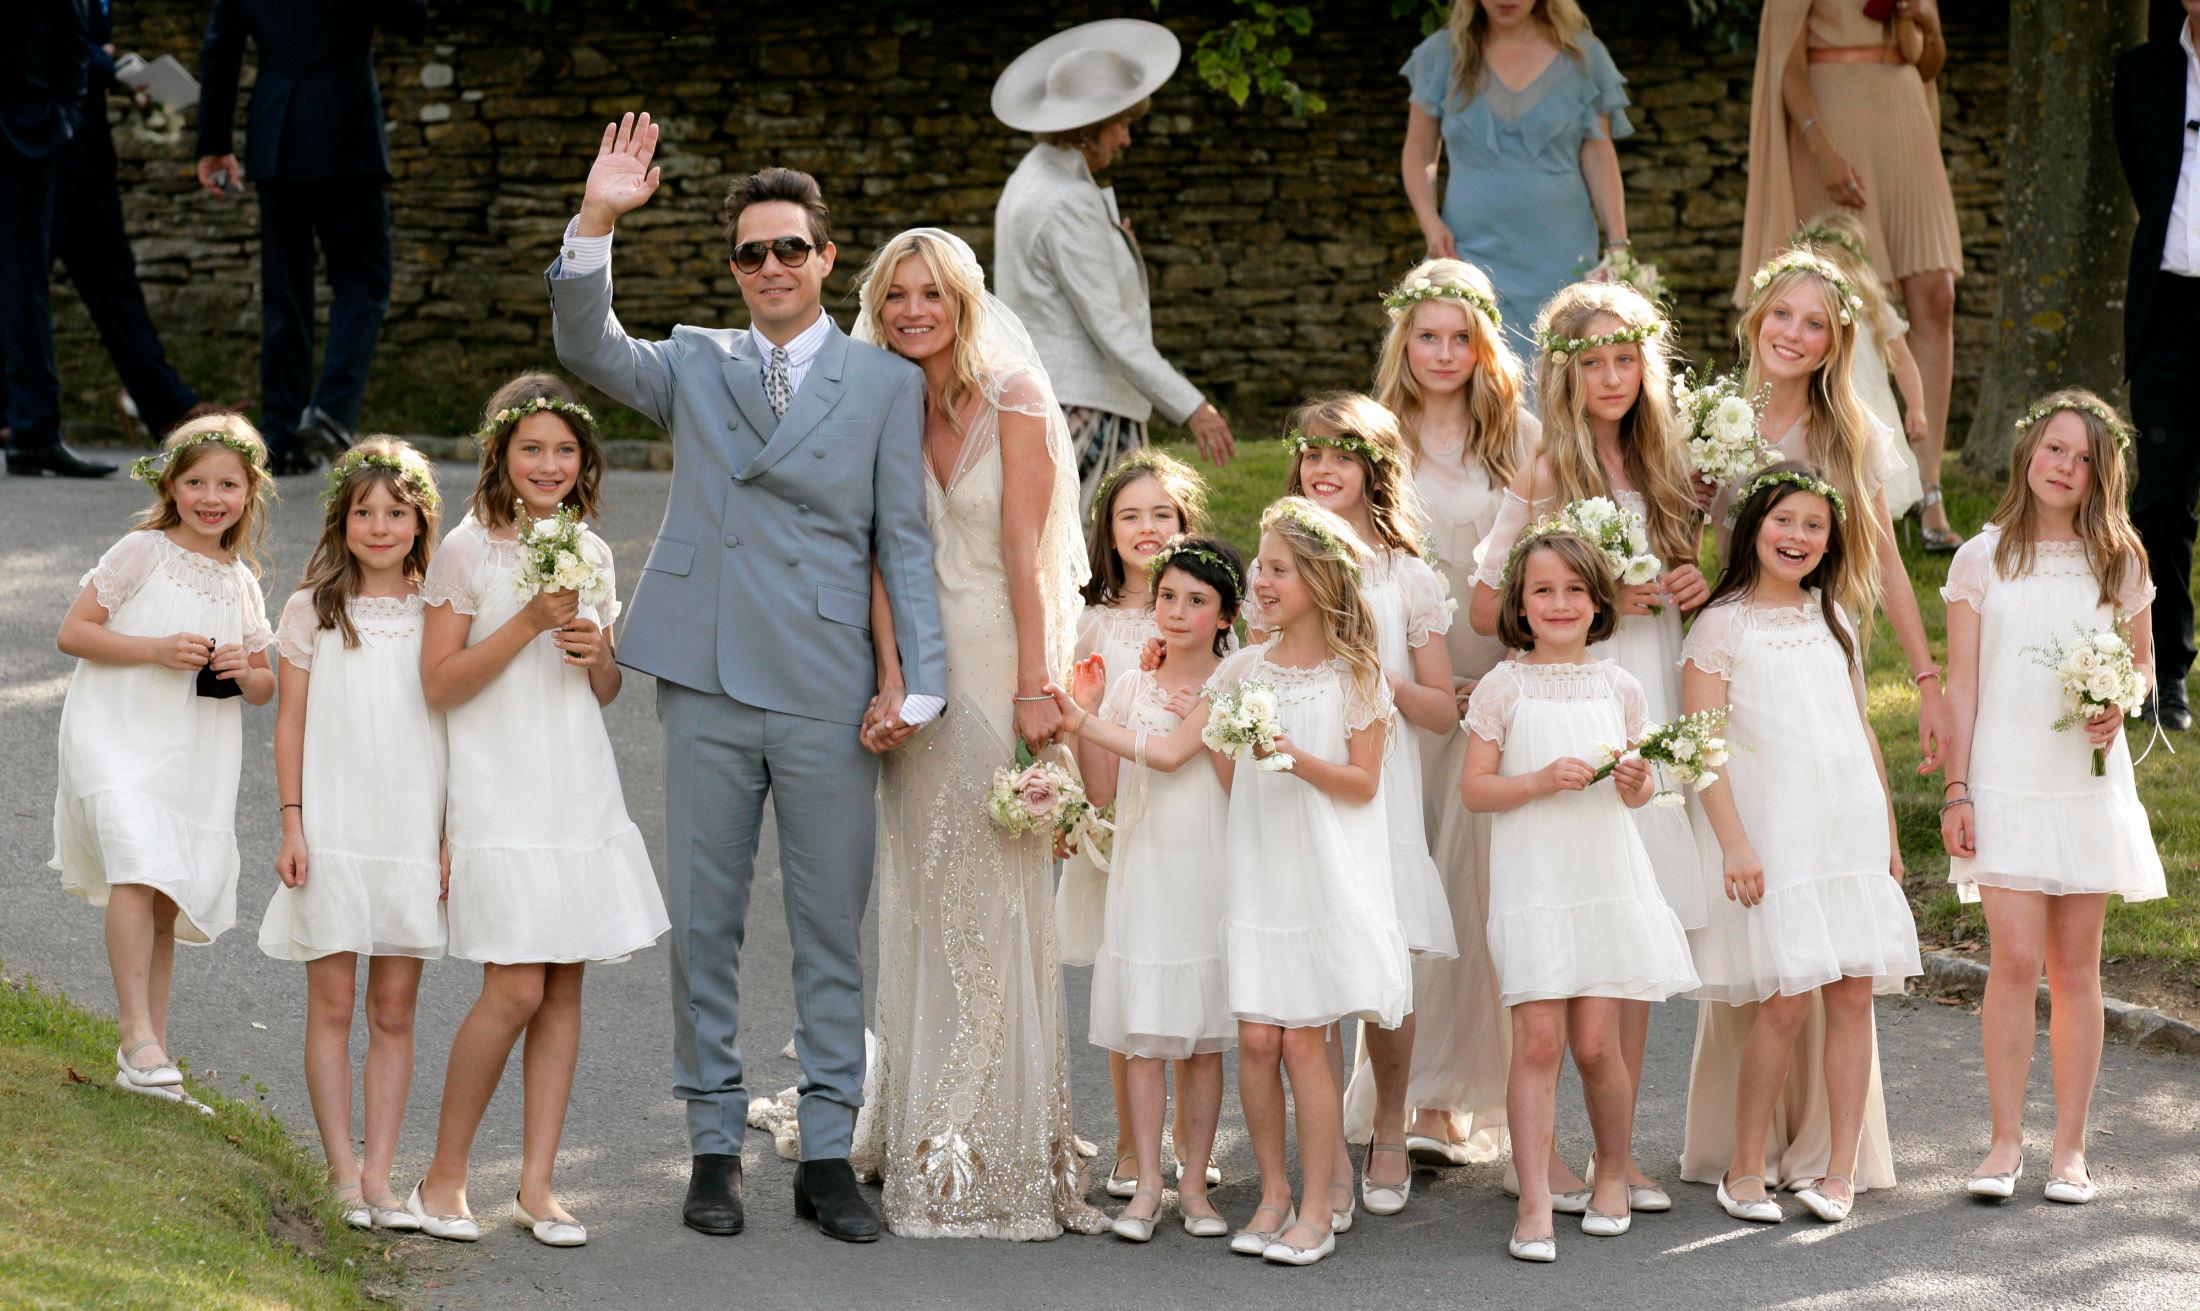 LILLE MOSS: Lottie Moss (nummer fem ved side av Kate Moss) skapte overskrifter da hun var en av brudepikene til storesøster i 2011. Foto: Getty Images